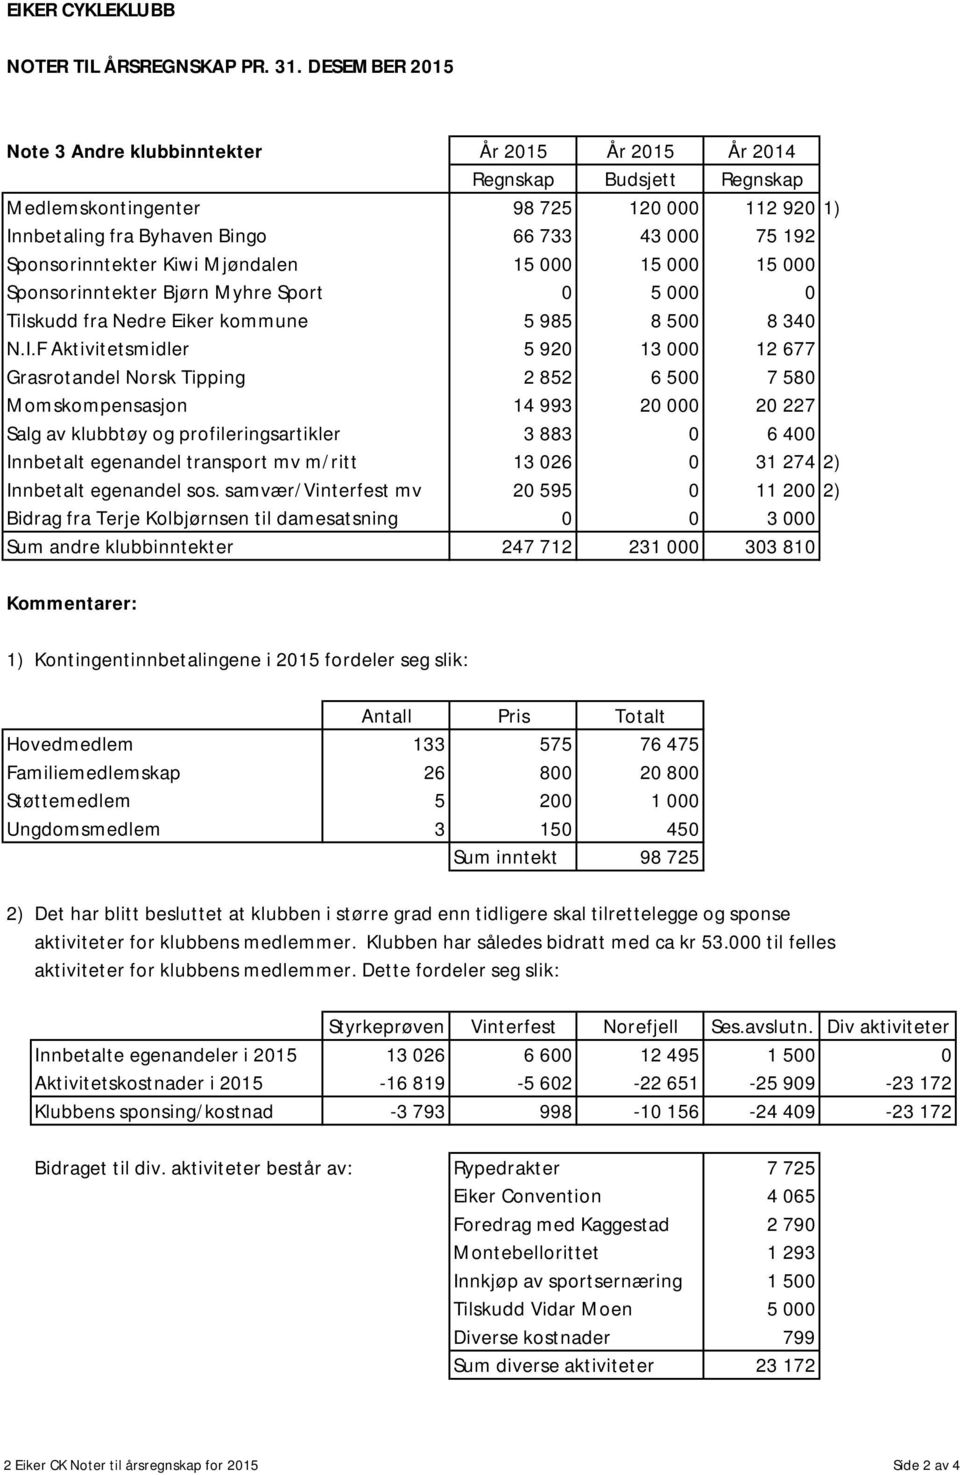 Sponsorinntekter Kiwi Mjøndalen 15 000 15 000 15 000 Sponsorinntekter Bjørn Myhre Sport 0 5 000 0 Tilskudd fra Nedre Eiker kommune 5 985 8 500 8 340 N.I.